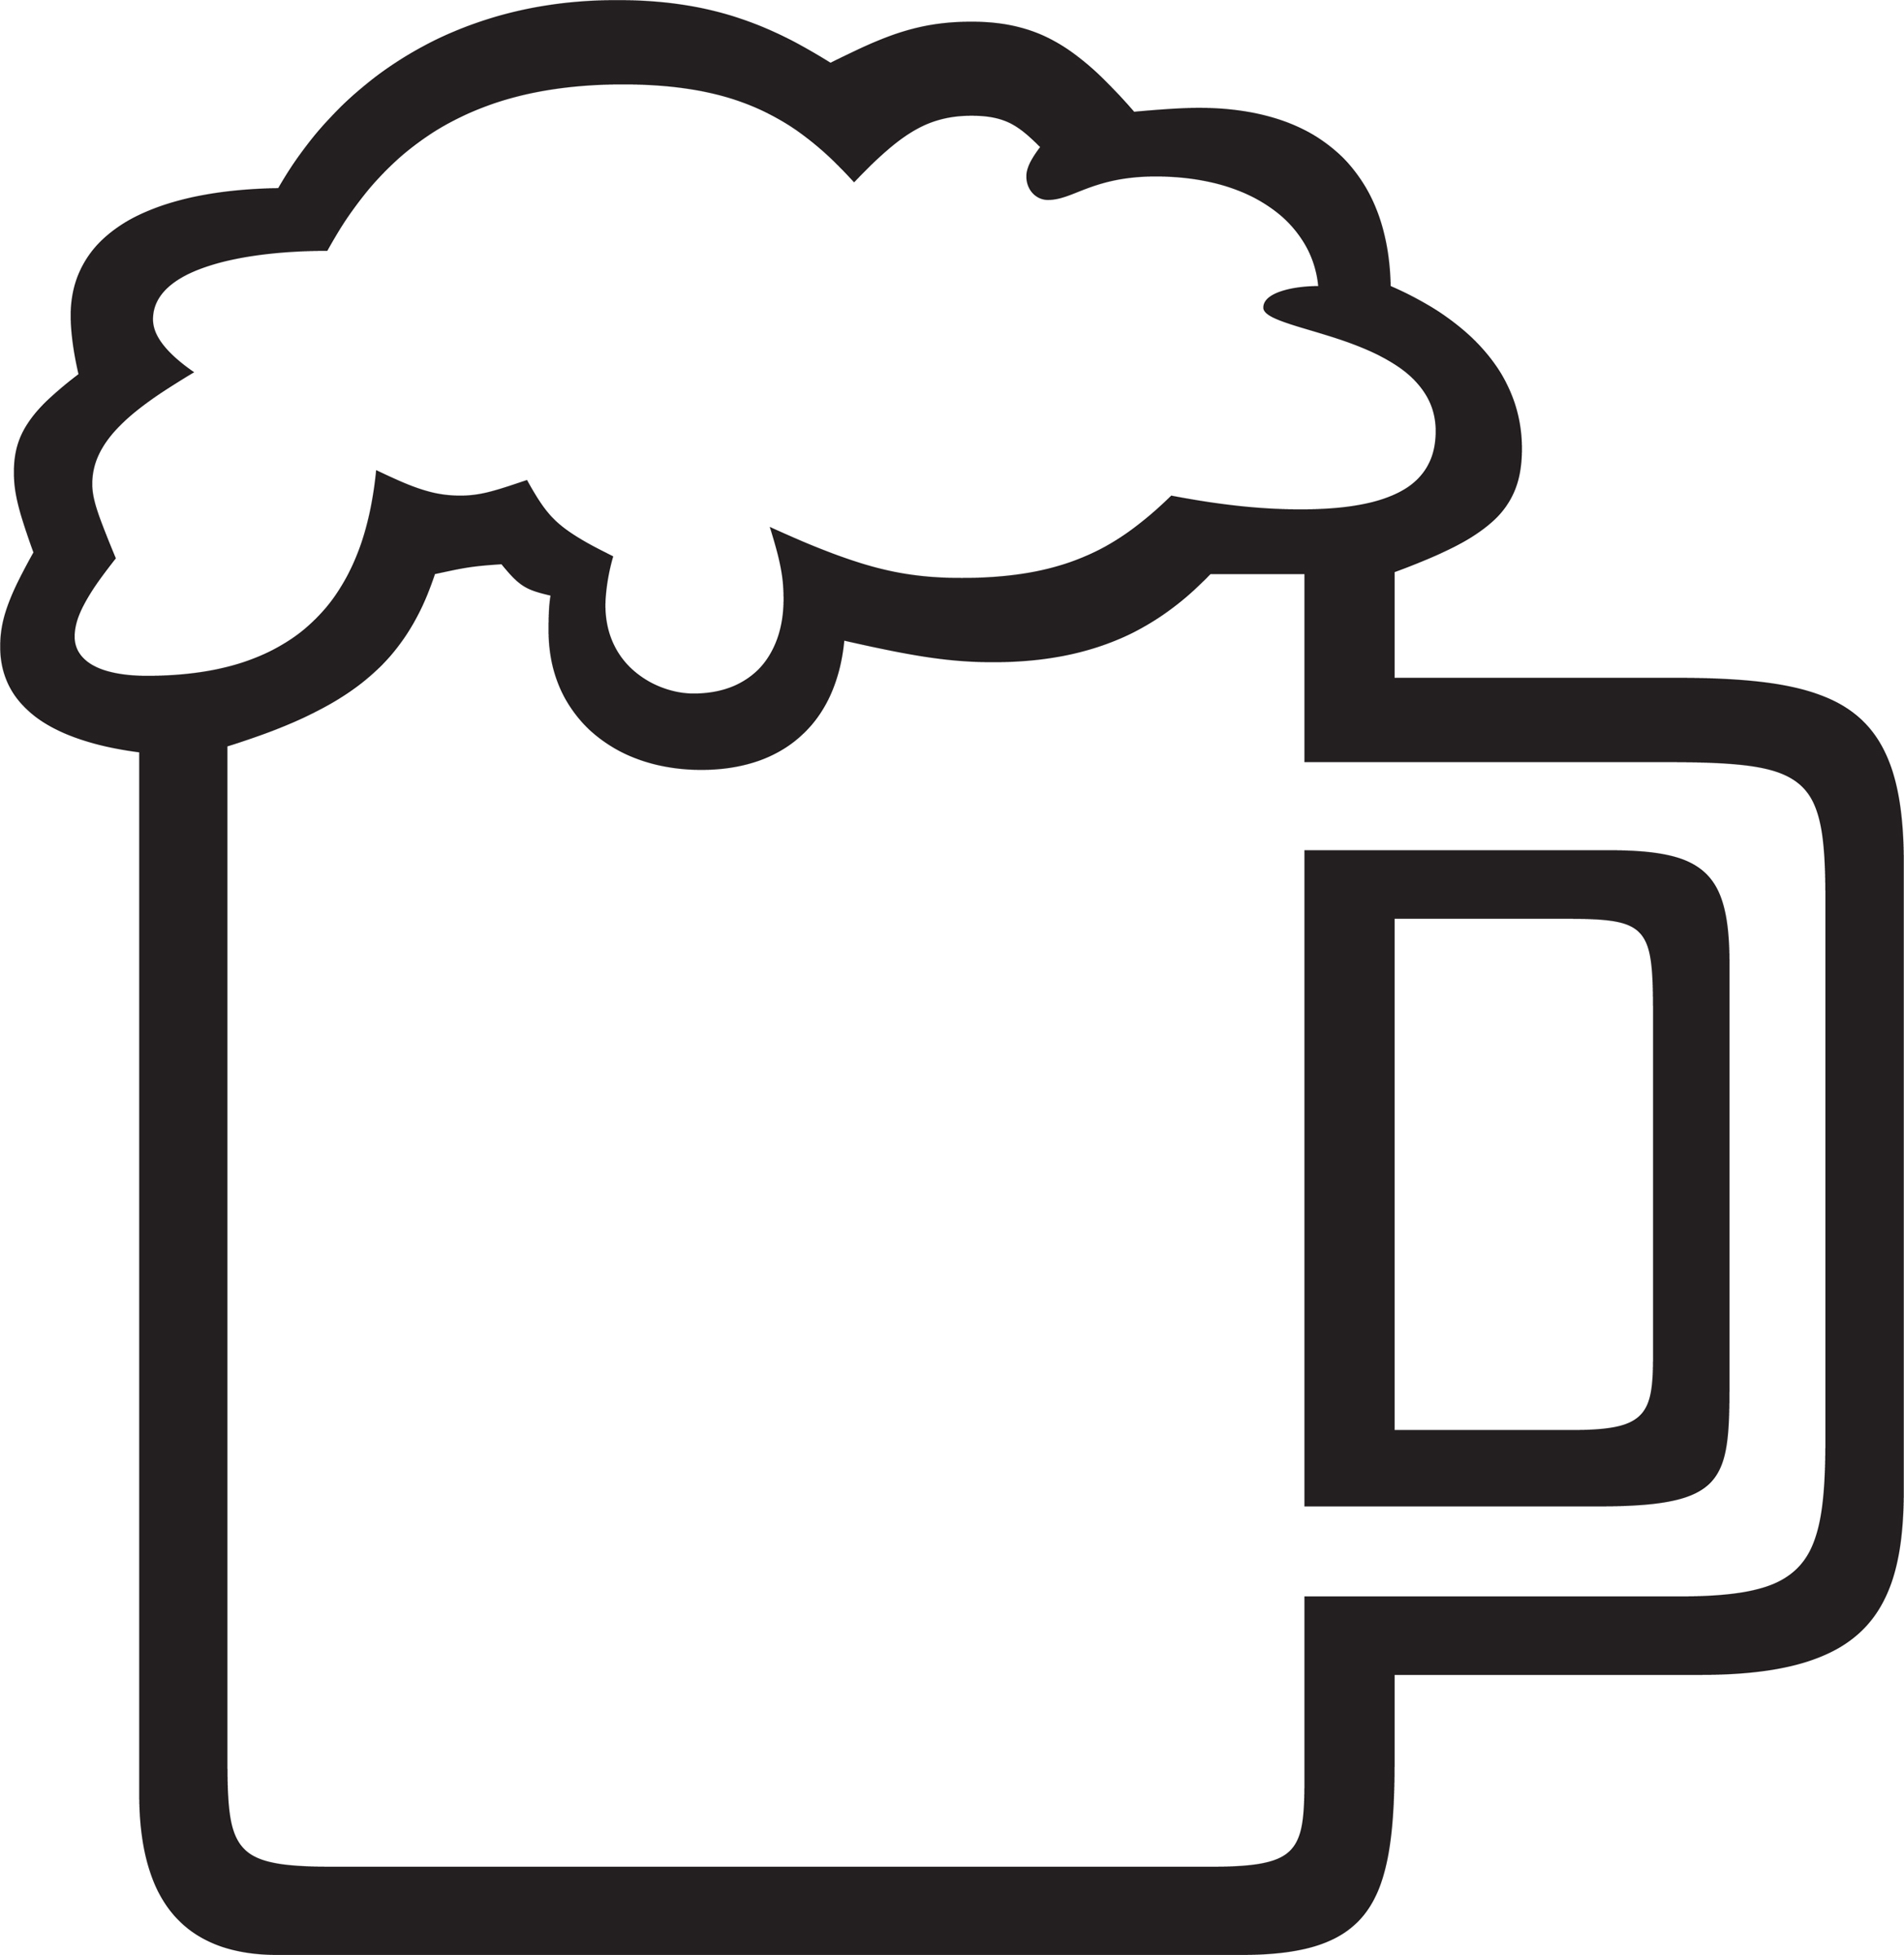 Images For > Beer Mug Clip Art Png